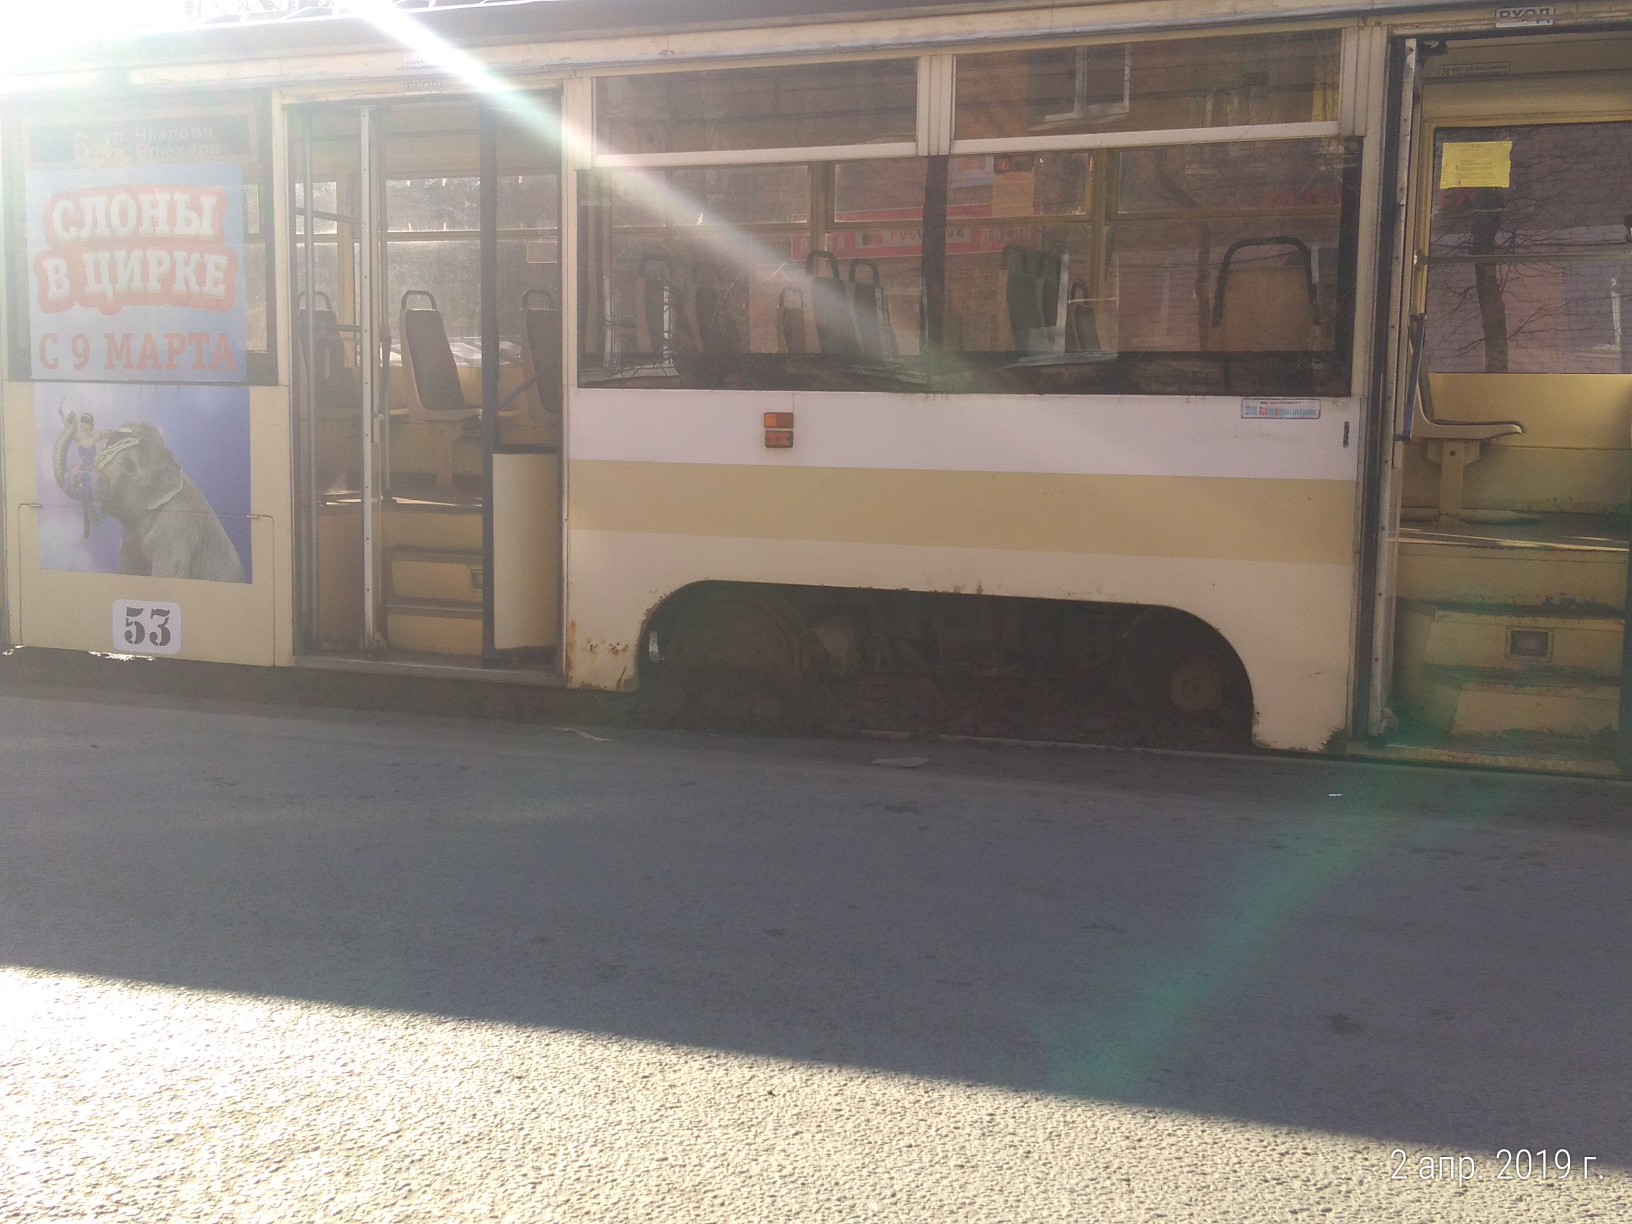 В Ярославле трамвай сошел с рельсов